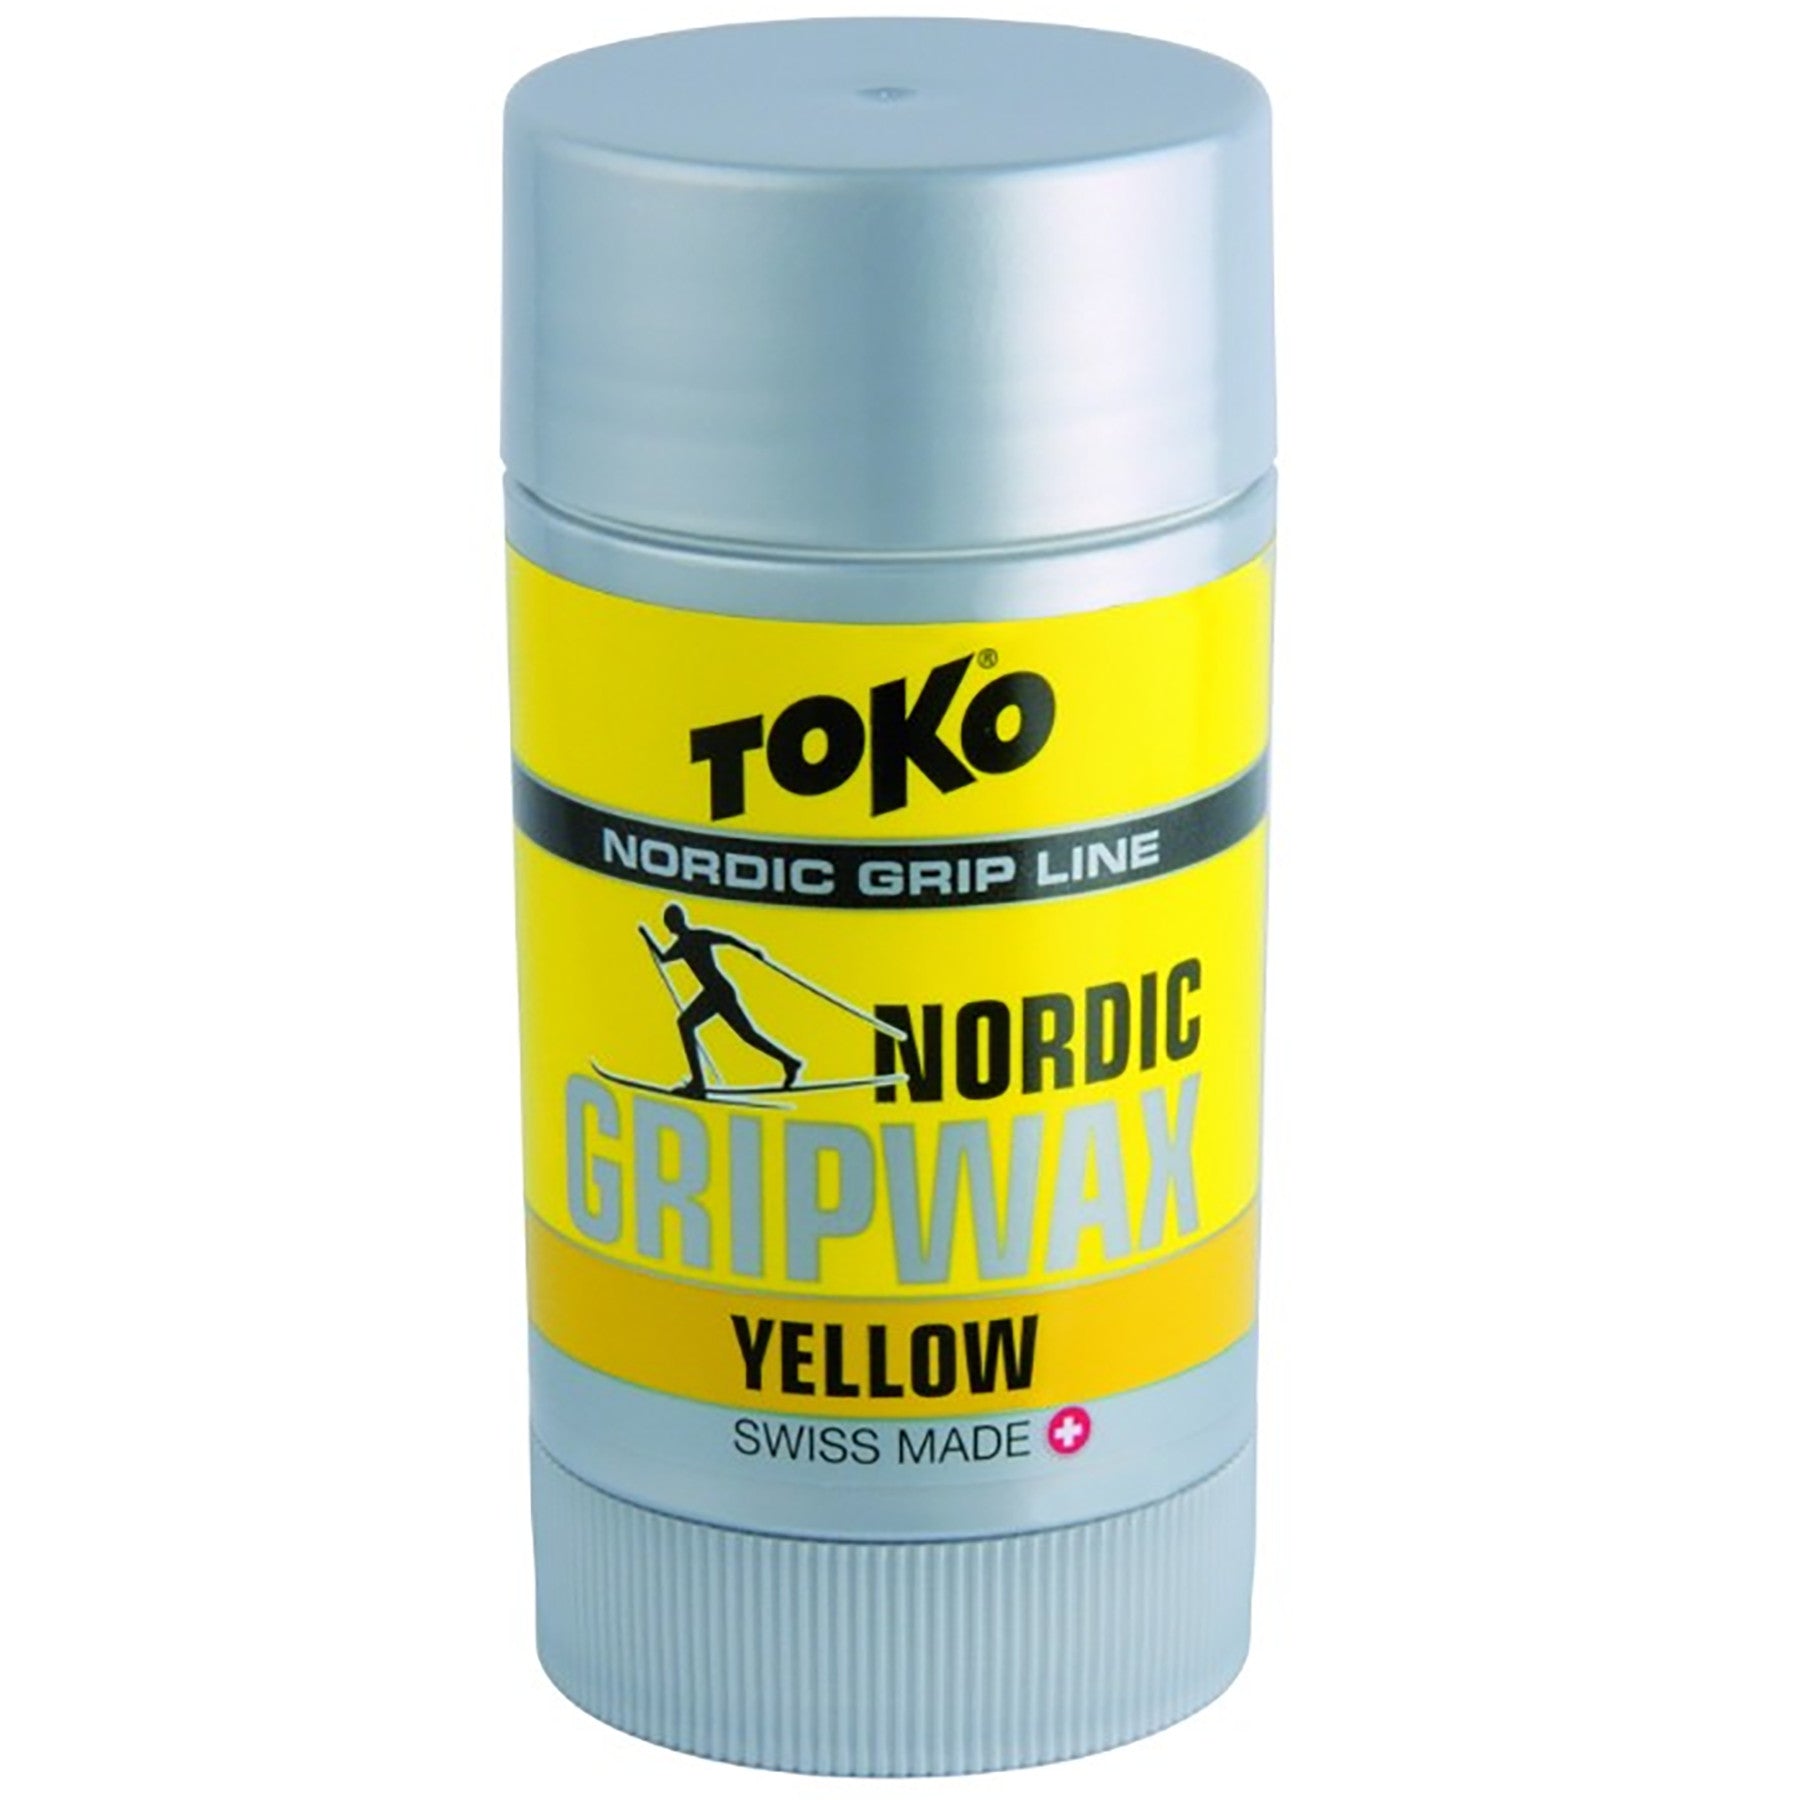 Buy yellow Toko Nordic GripWax